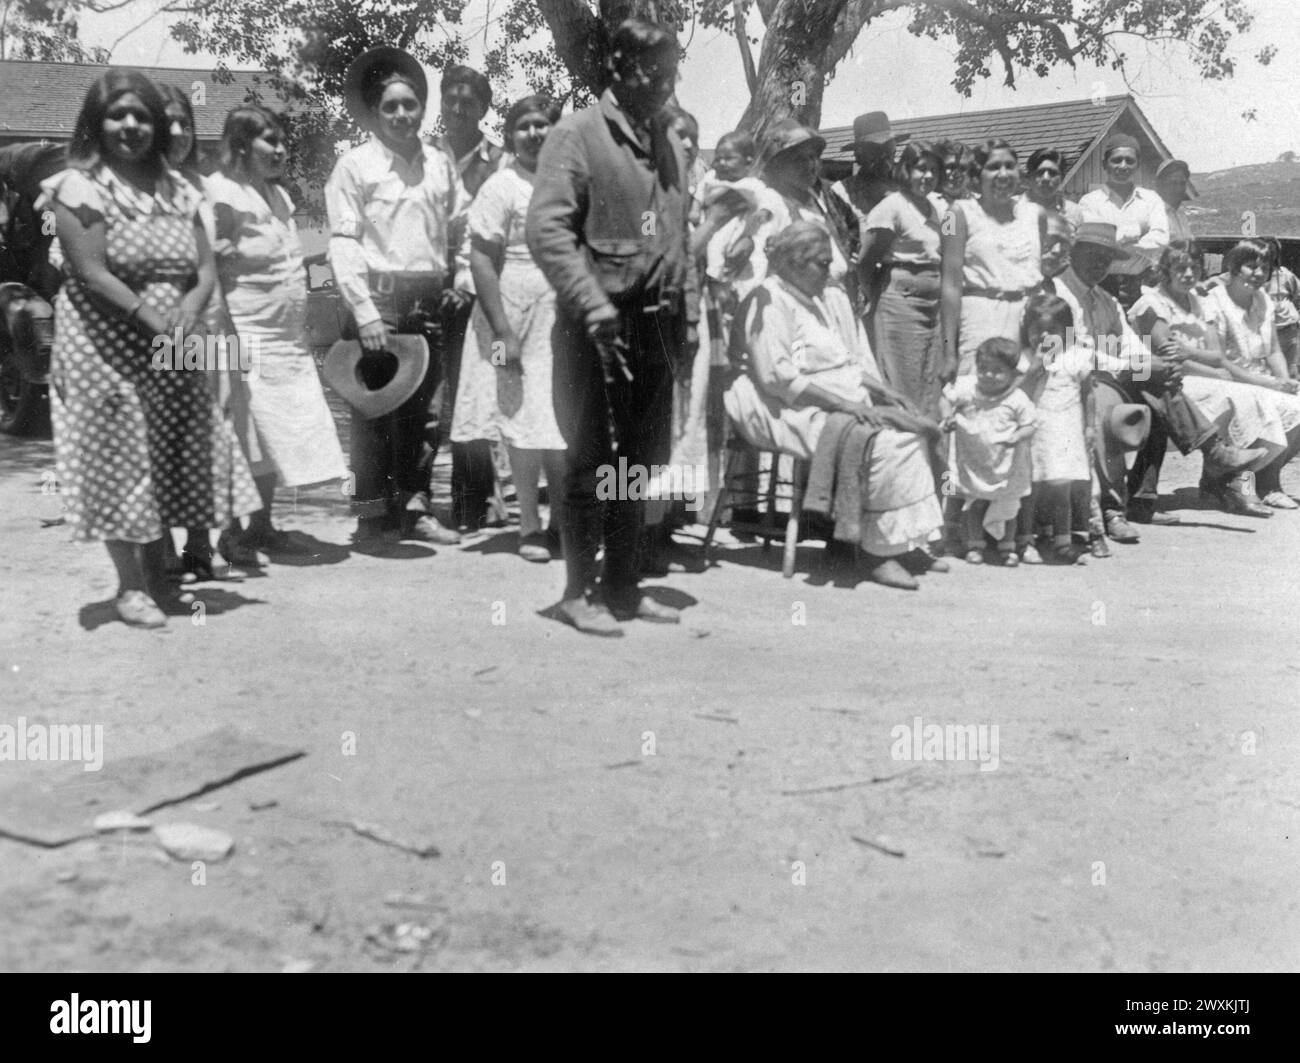 Bande de Barona des Indiens de mission, Californie : photographie d'une réunion communautaire sur la réserve de Barona CA. 1936-1942 Banque D'Images